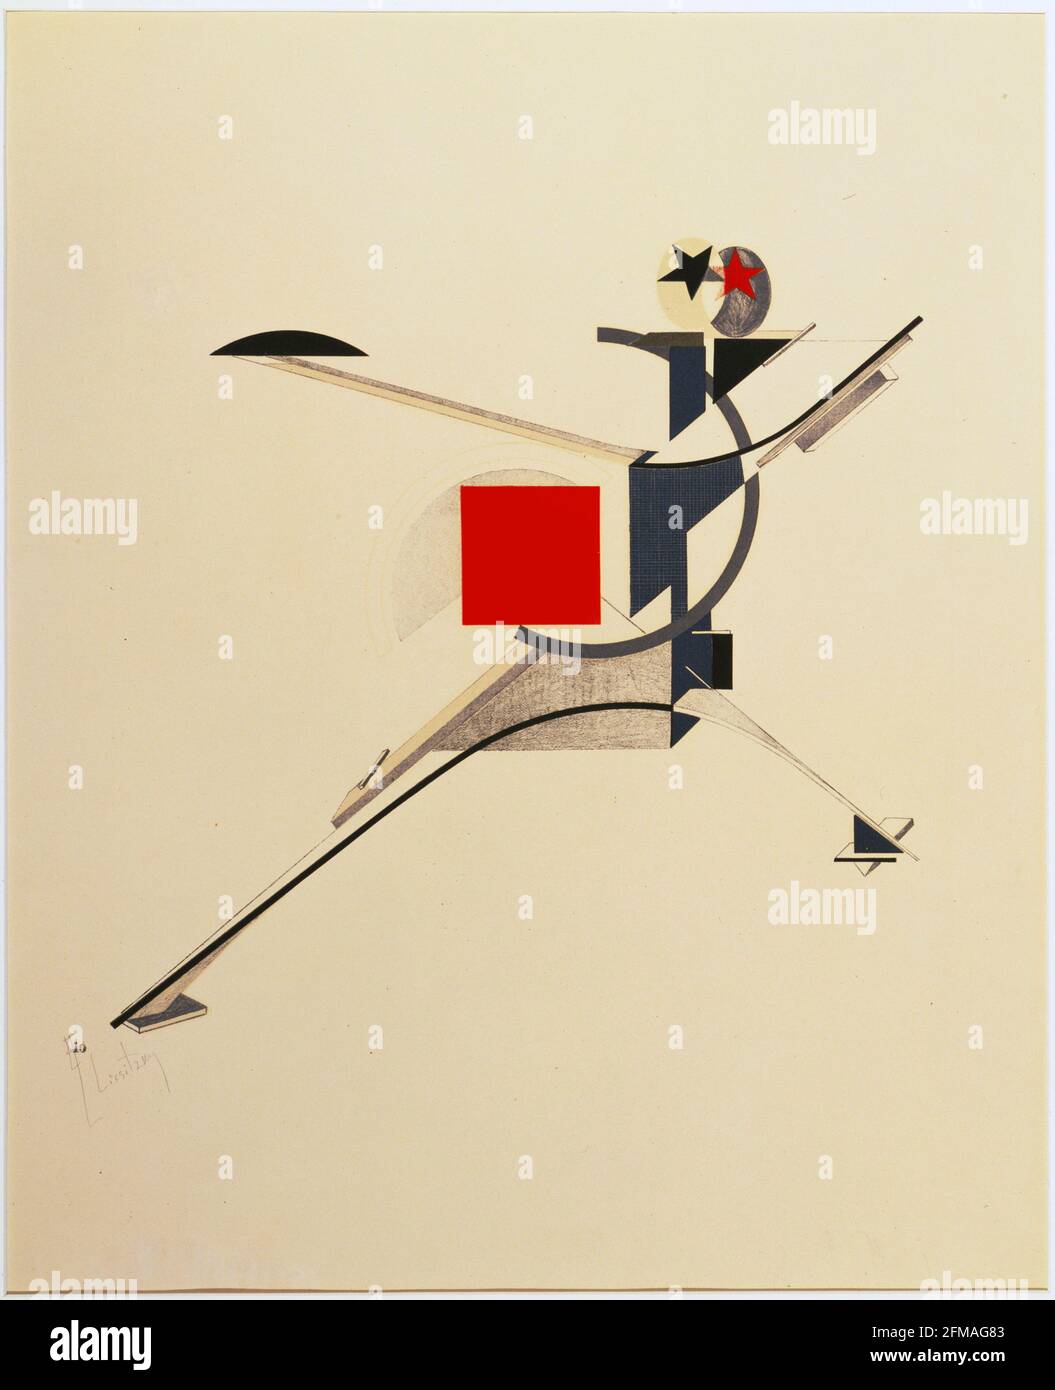 El Lissitzky. (Russe, 1890-1941). Neuer (New Man) de Figurinen, die Plastische Gestaltung der elektro-mécanischen Schau 'sieg über die sonne' Banque D'Images